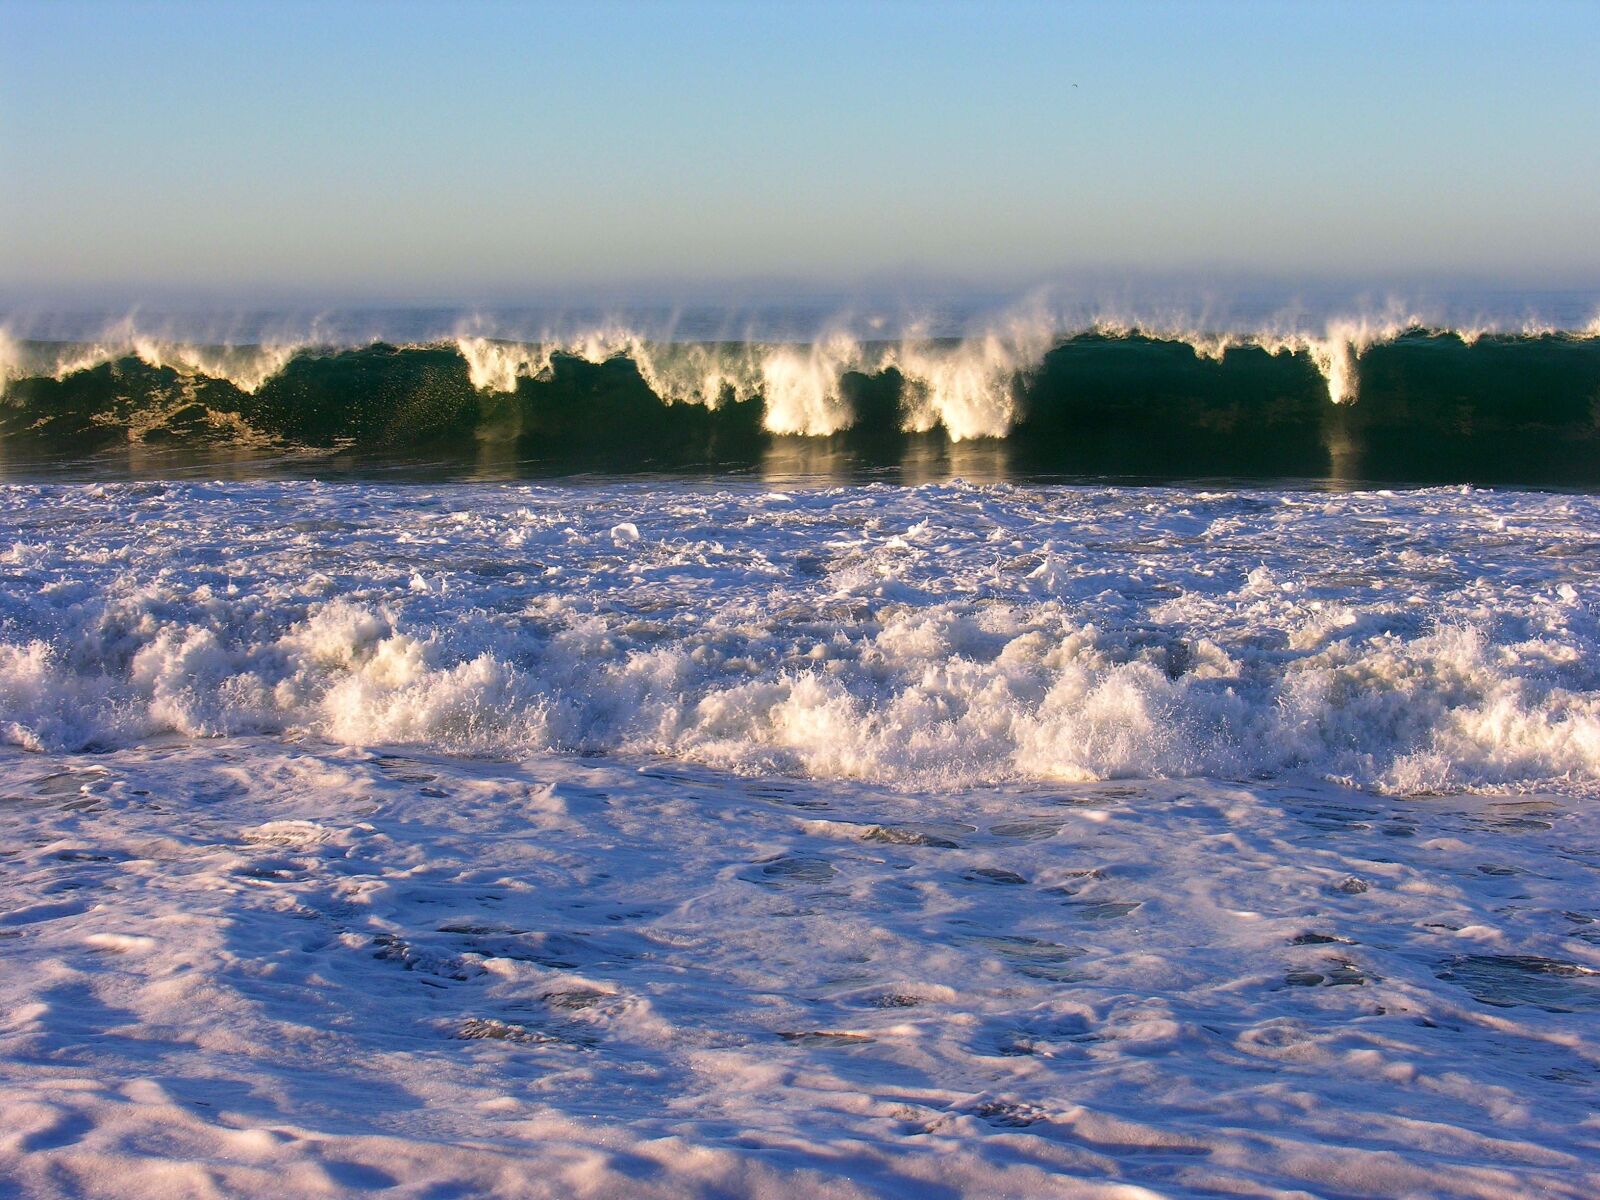 Nikon E8800 sample photo. Nature, ocean, beach photography